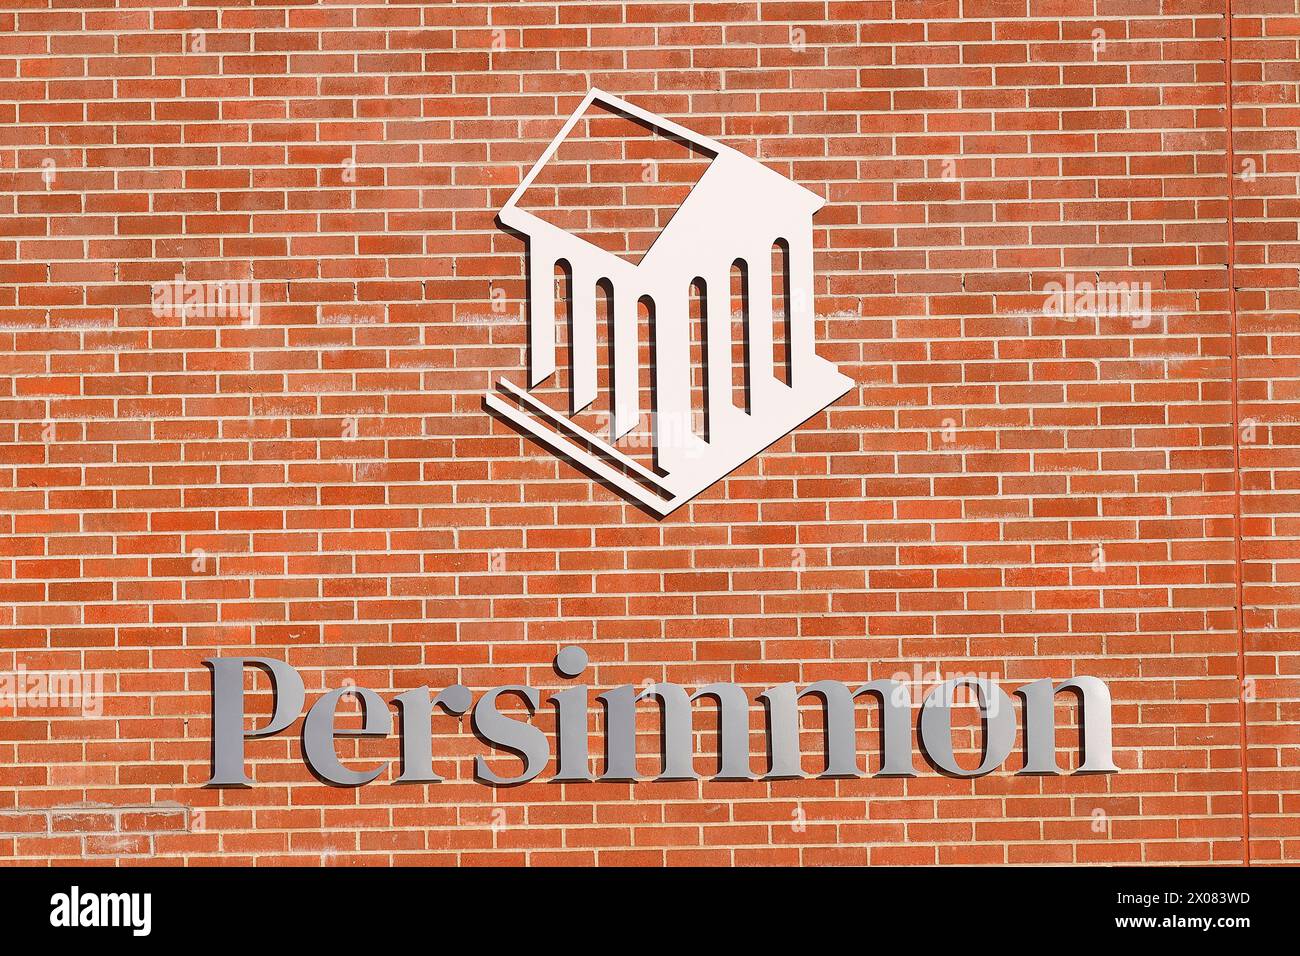 Logo et signe de constructeurs de maisons Persimmon Homes Banque D'Images